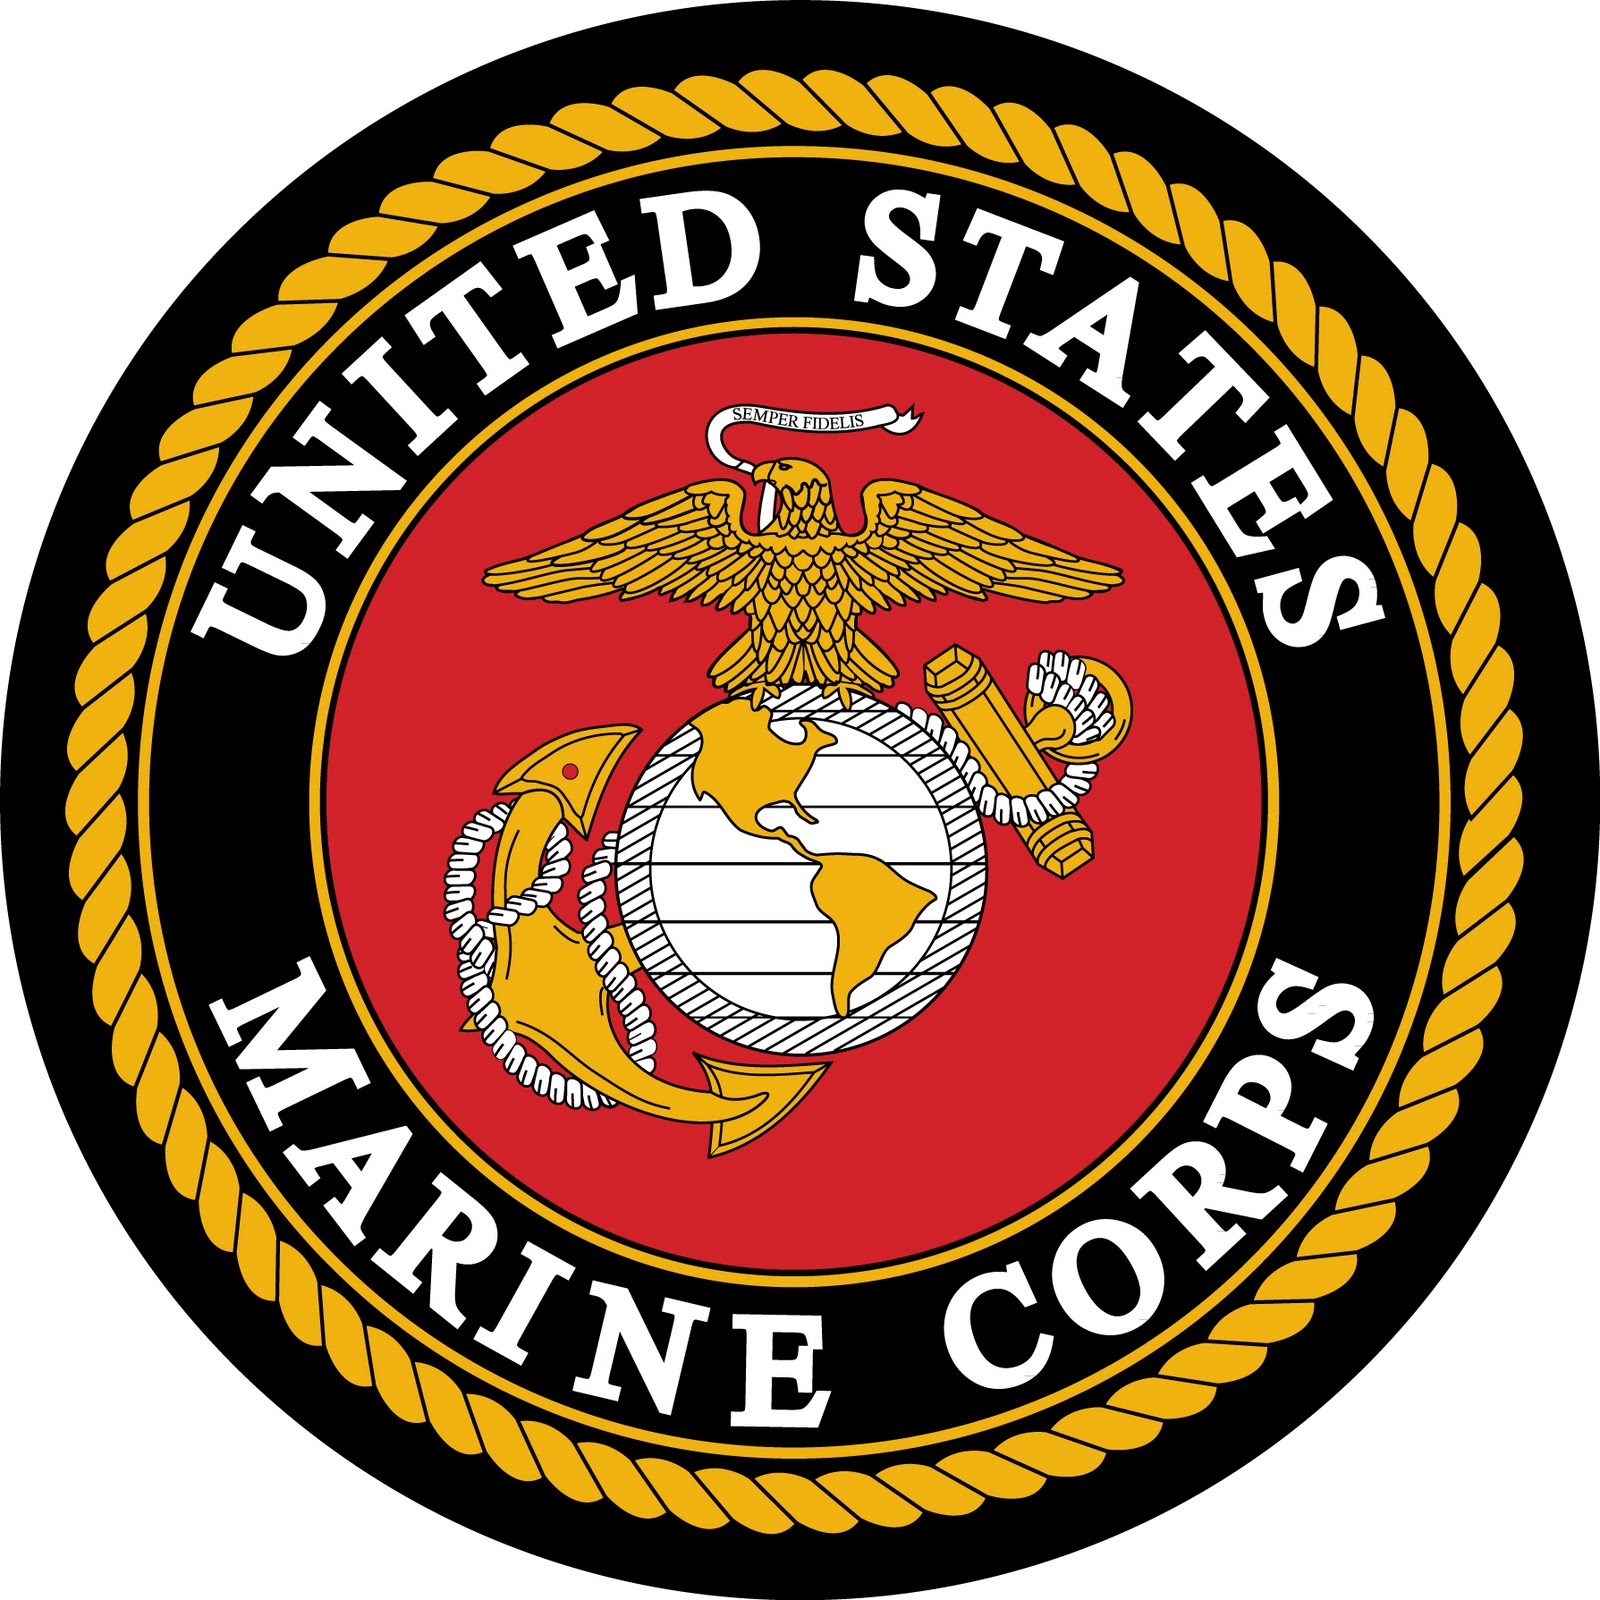 http://2.bp.blogspot.com/-8AHvrzNph-0/TuUMy6PfSbI/AAAAAAAAXKY/iSsYbxkMlZE/s1600/Marines-in-use.jpg